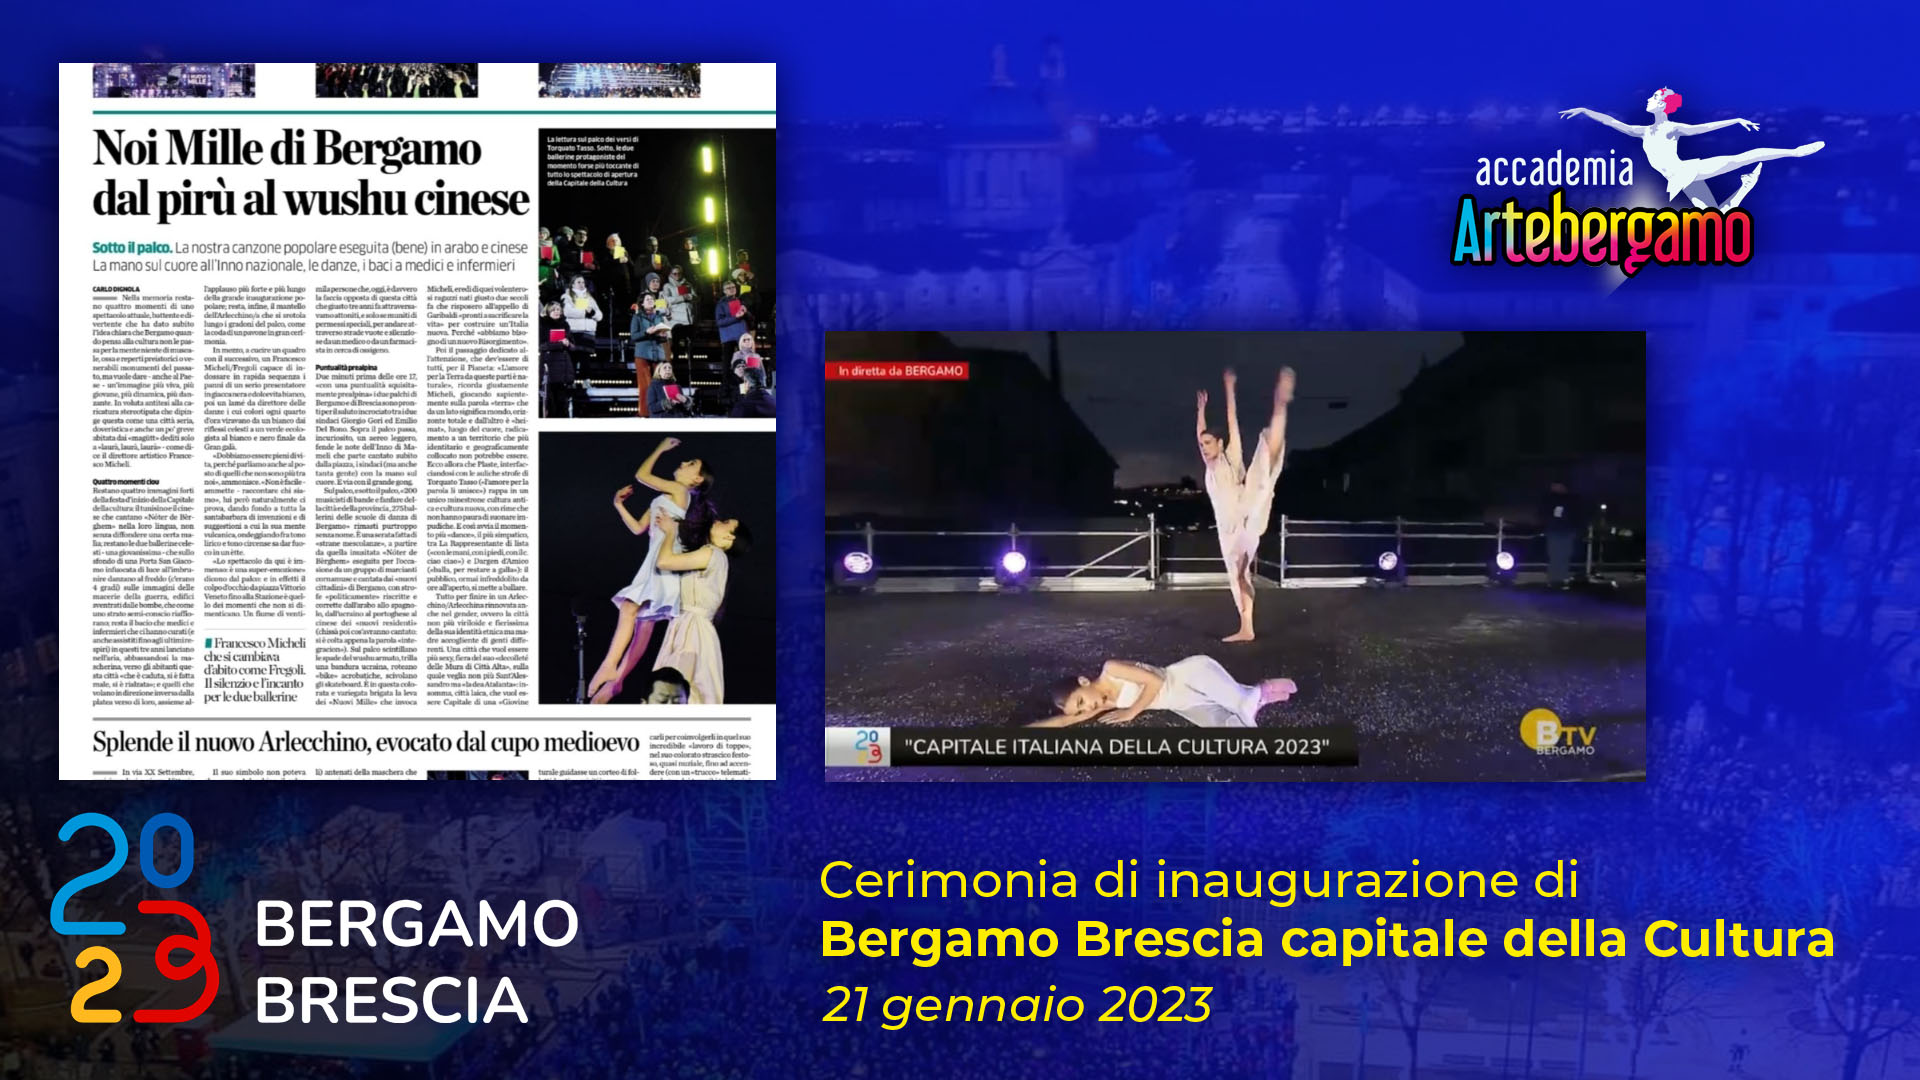 Accademia Arte Bergamo - Inaugurazione Bergamo Brescia 2023 - Copertina